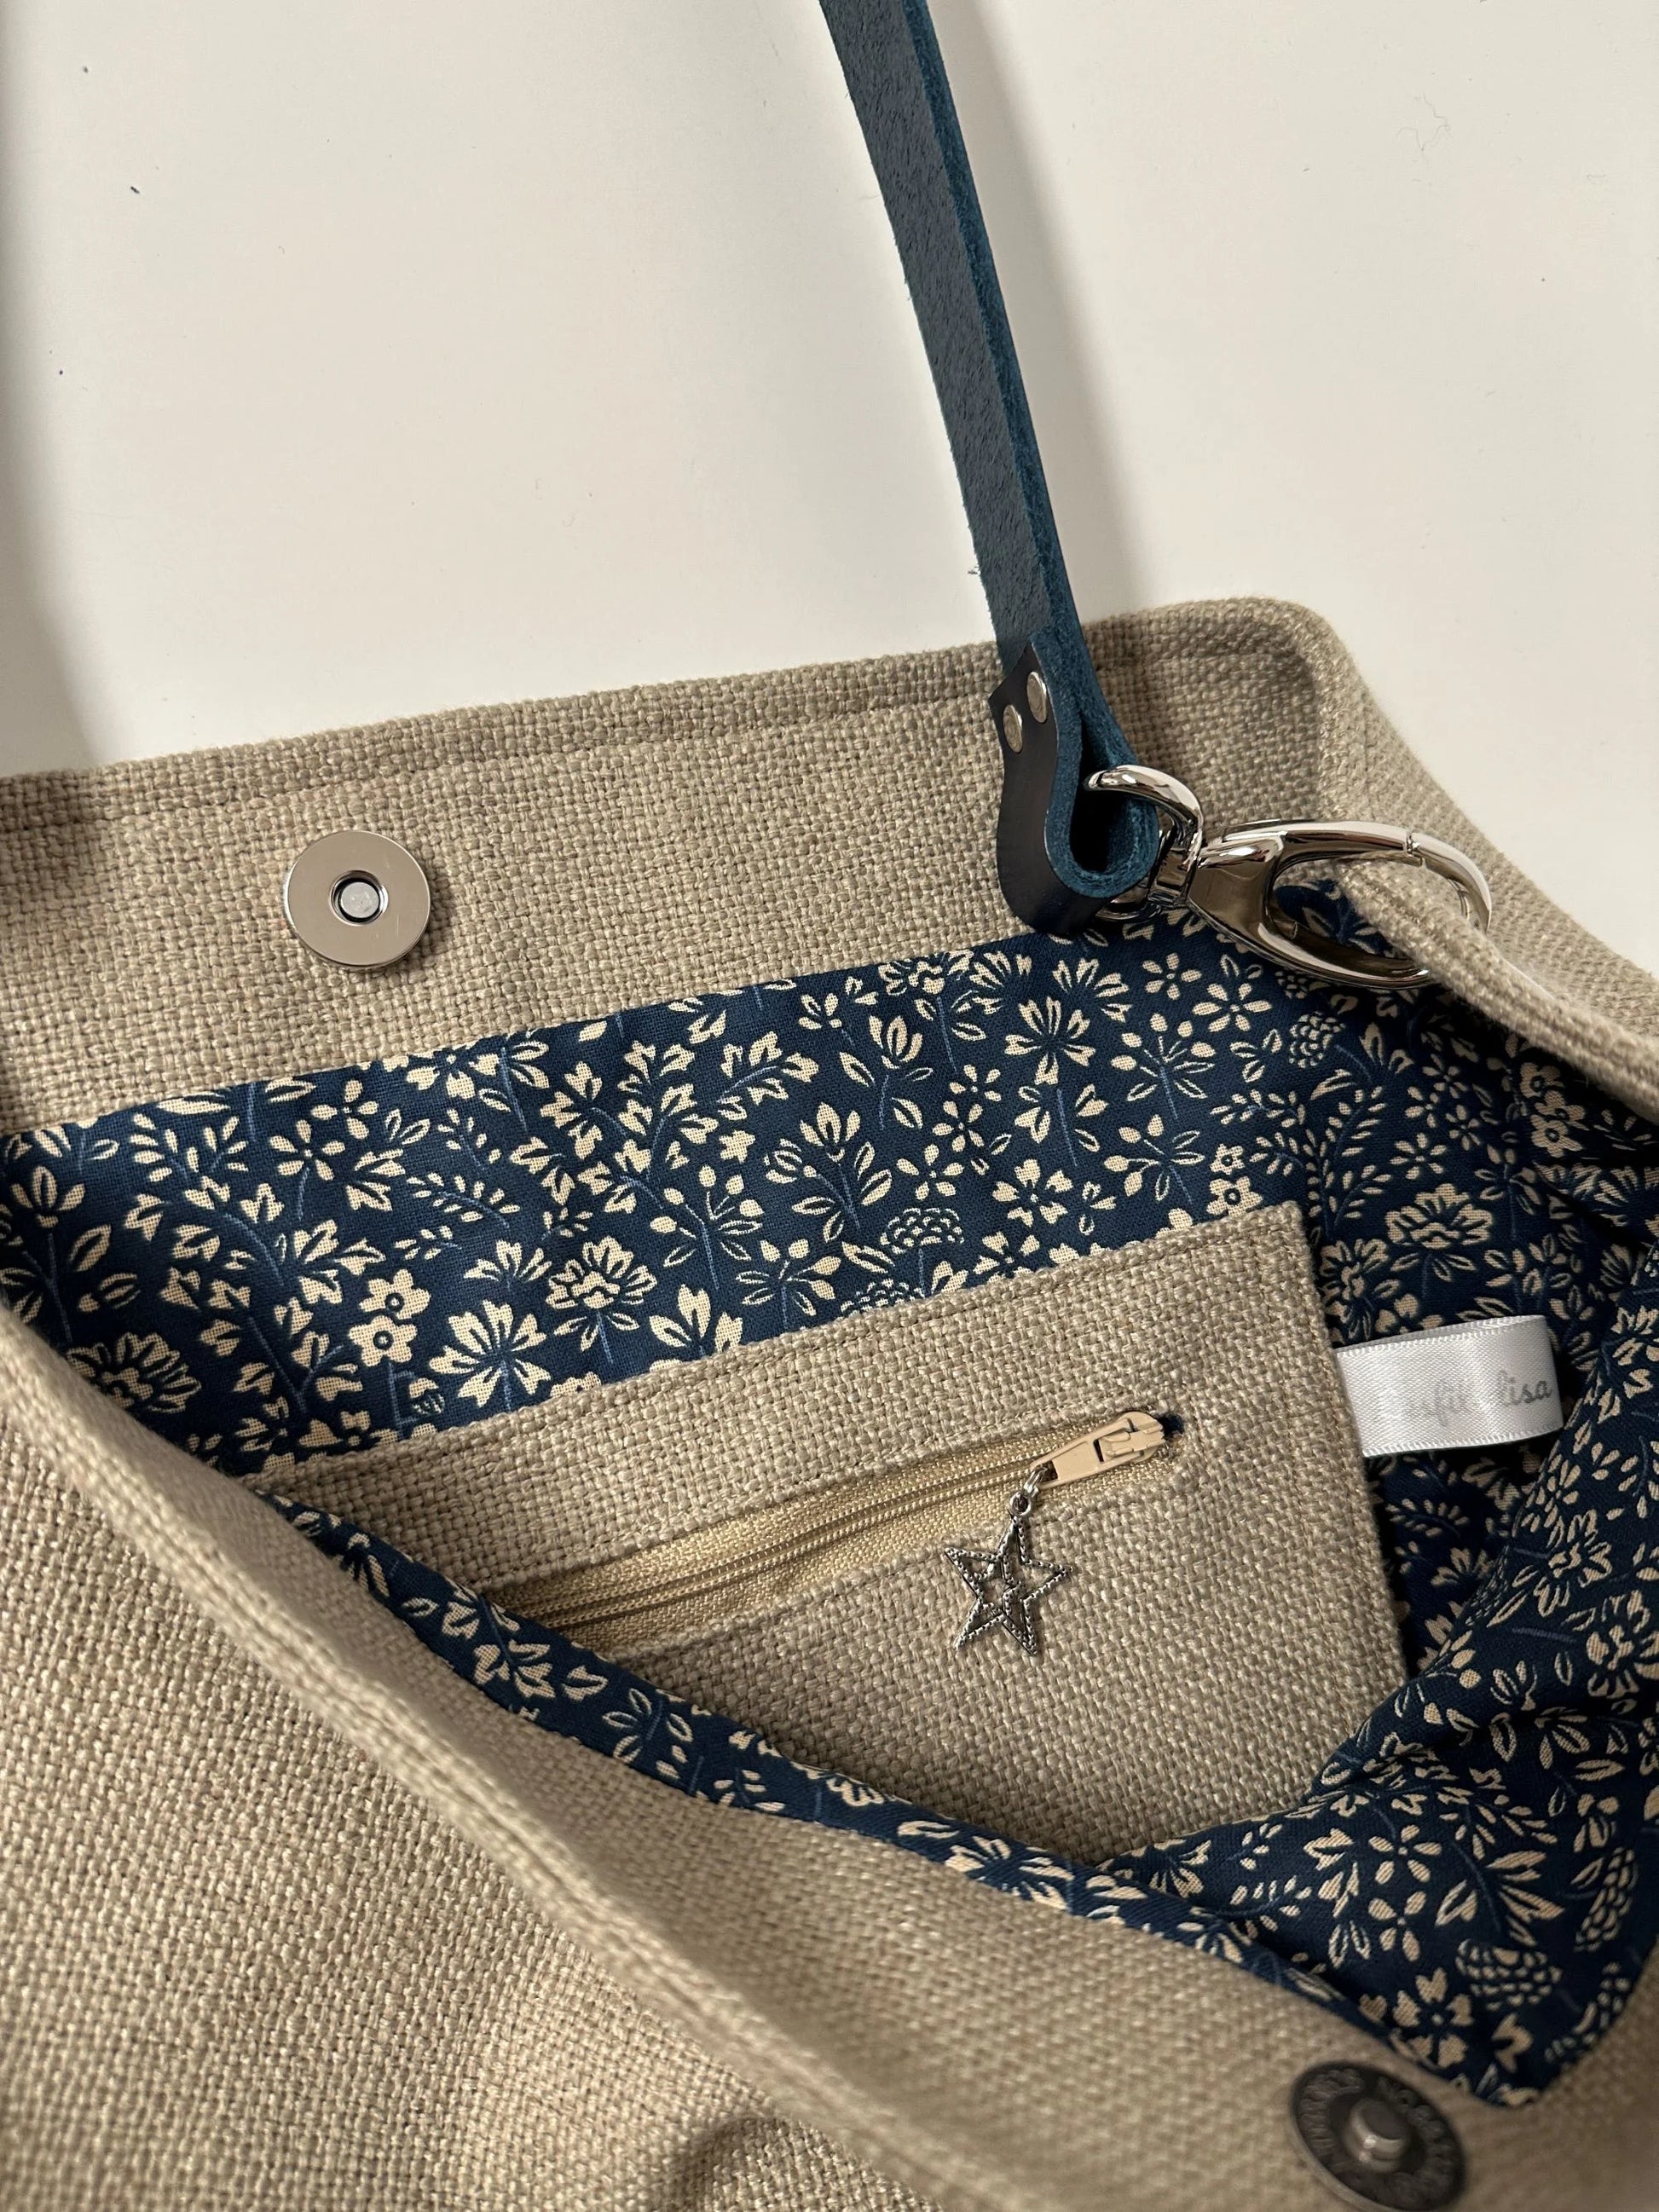 La poche intérieure zippée du sac Hobo en lin beige et son anse en cuir bleu marine amovible